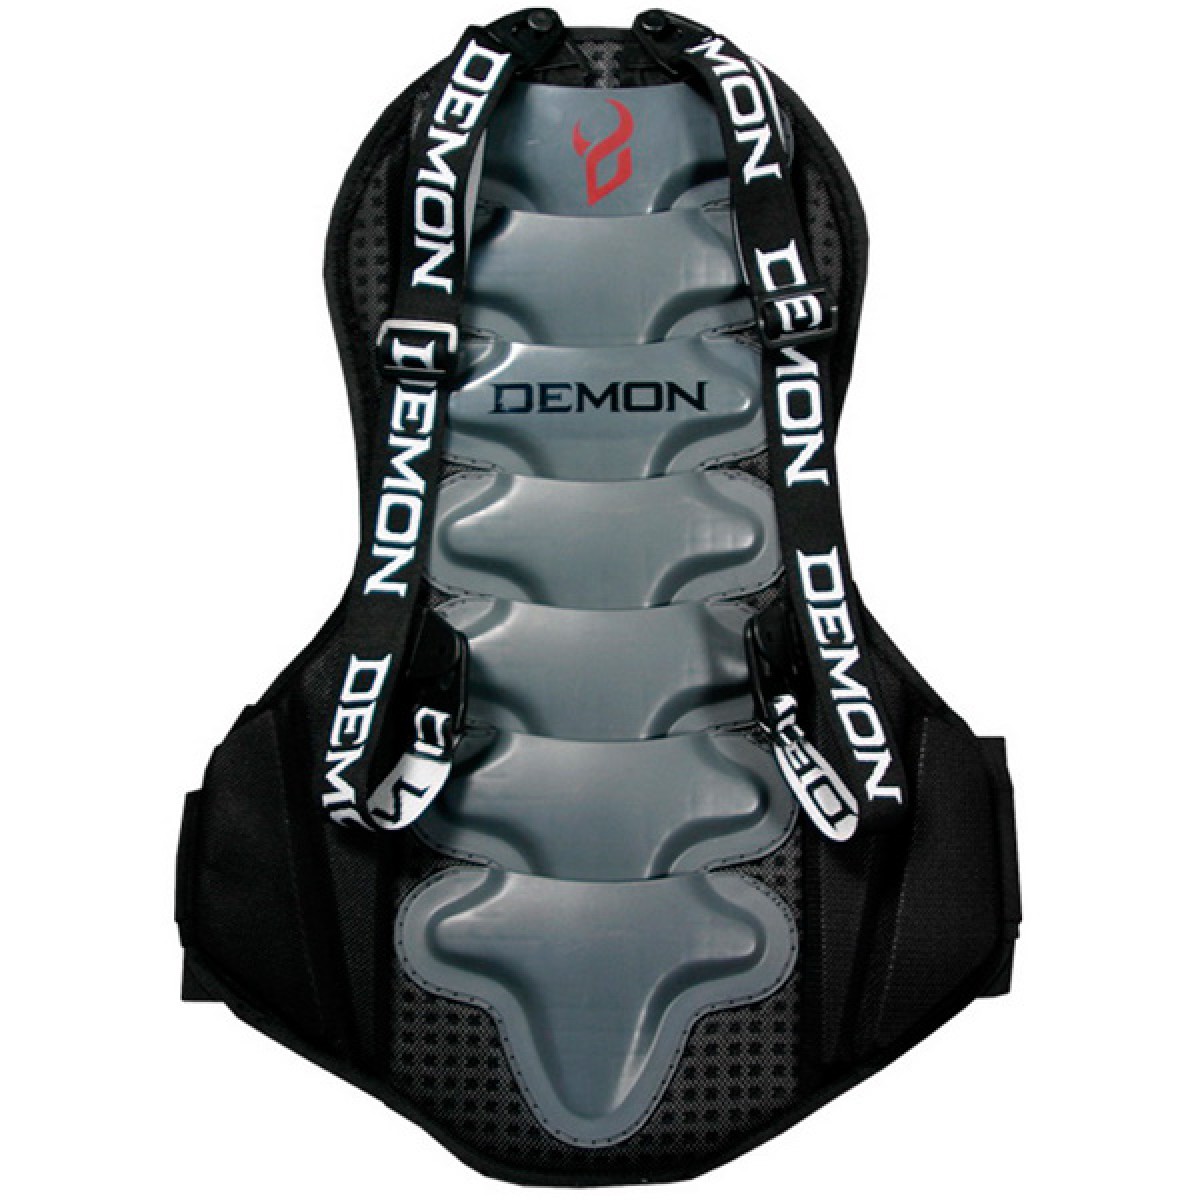 Велозащита спины Demon Flex-Force Pro Spine Guard DS1100c размер S